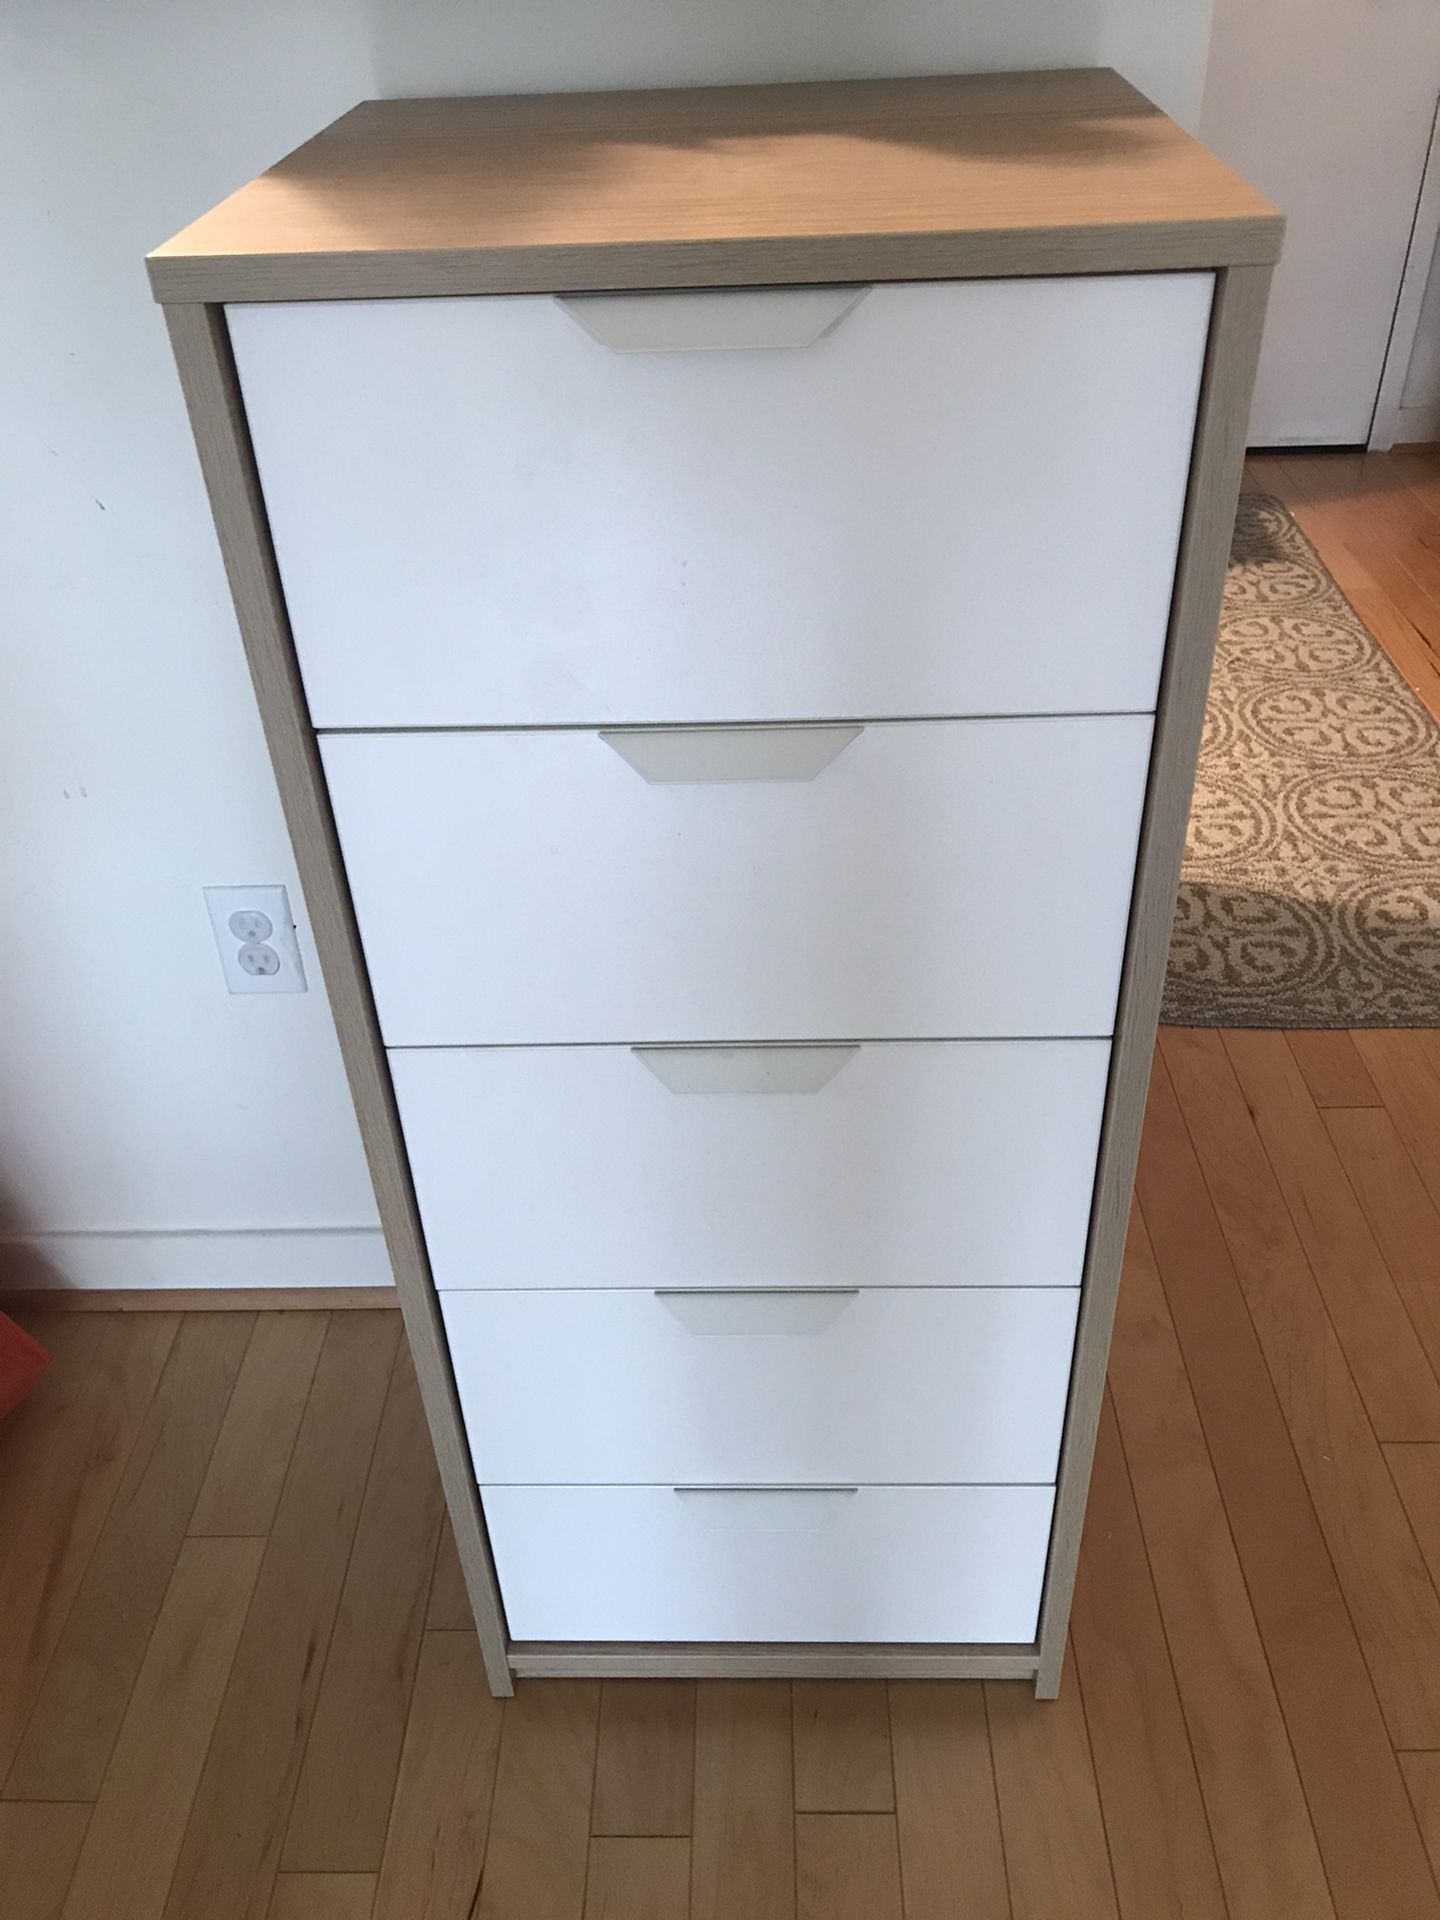 IKEA Askvoll 5 Drawer Dresser